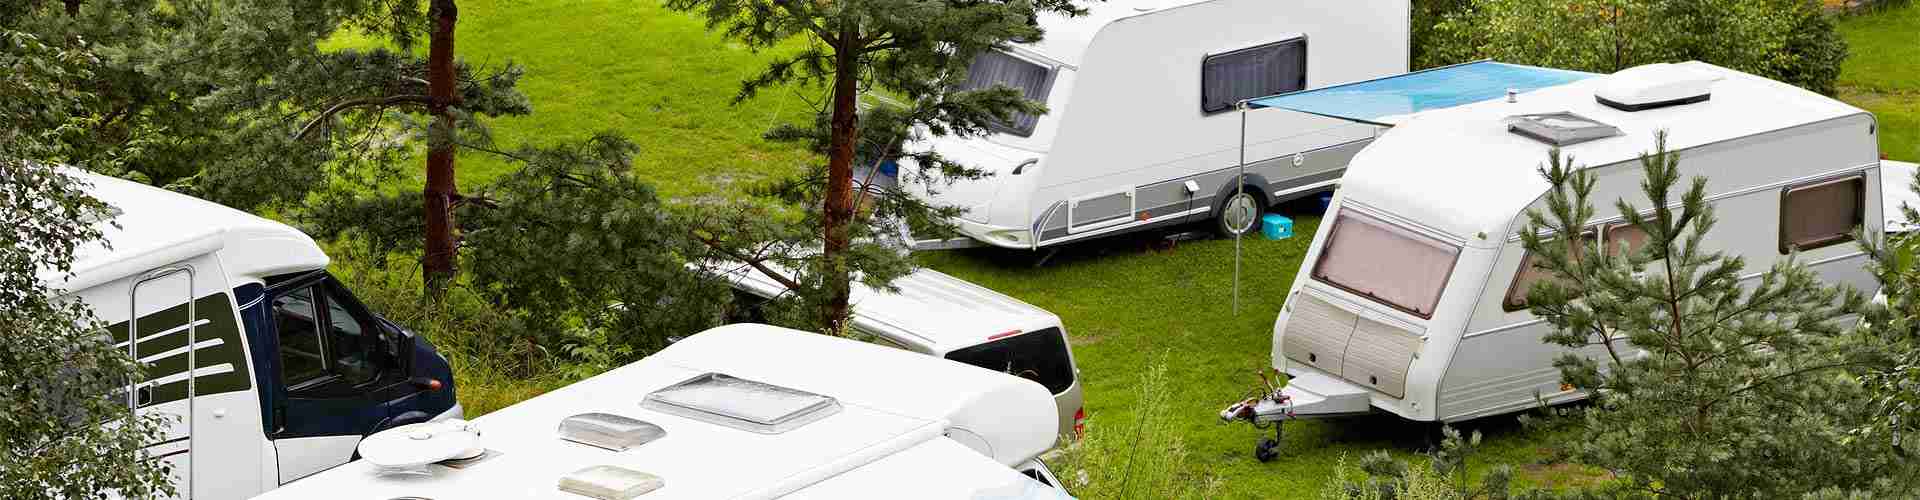 Campings y bungalows en Vales